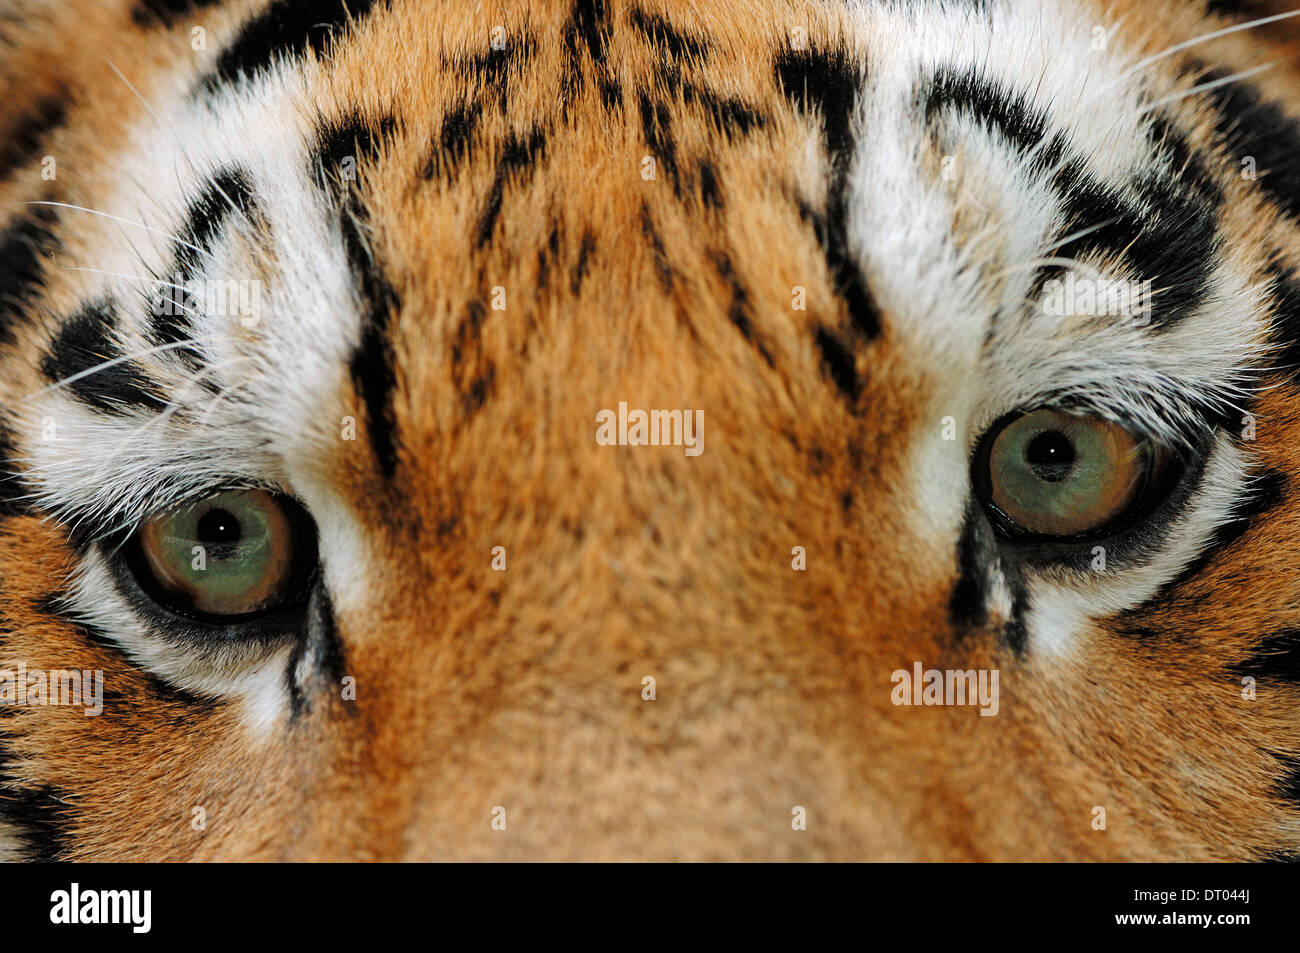 Siberian Tiger or Amur Tiger (Panthera tigris altaica) Stock Photo